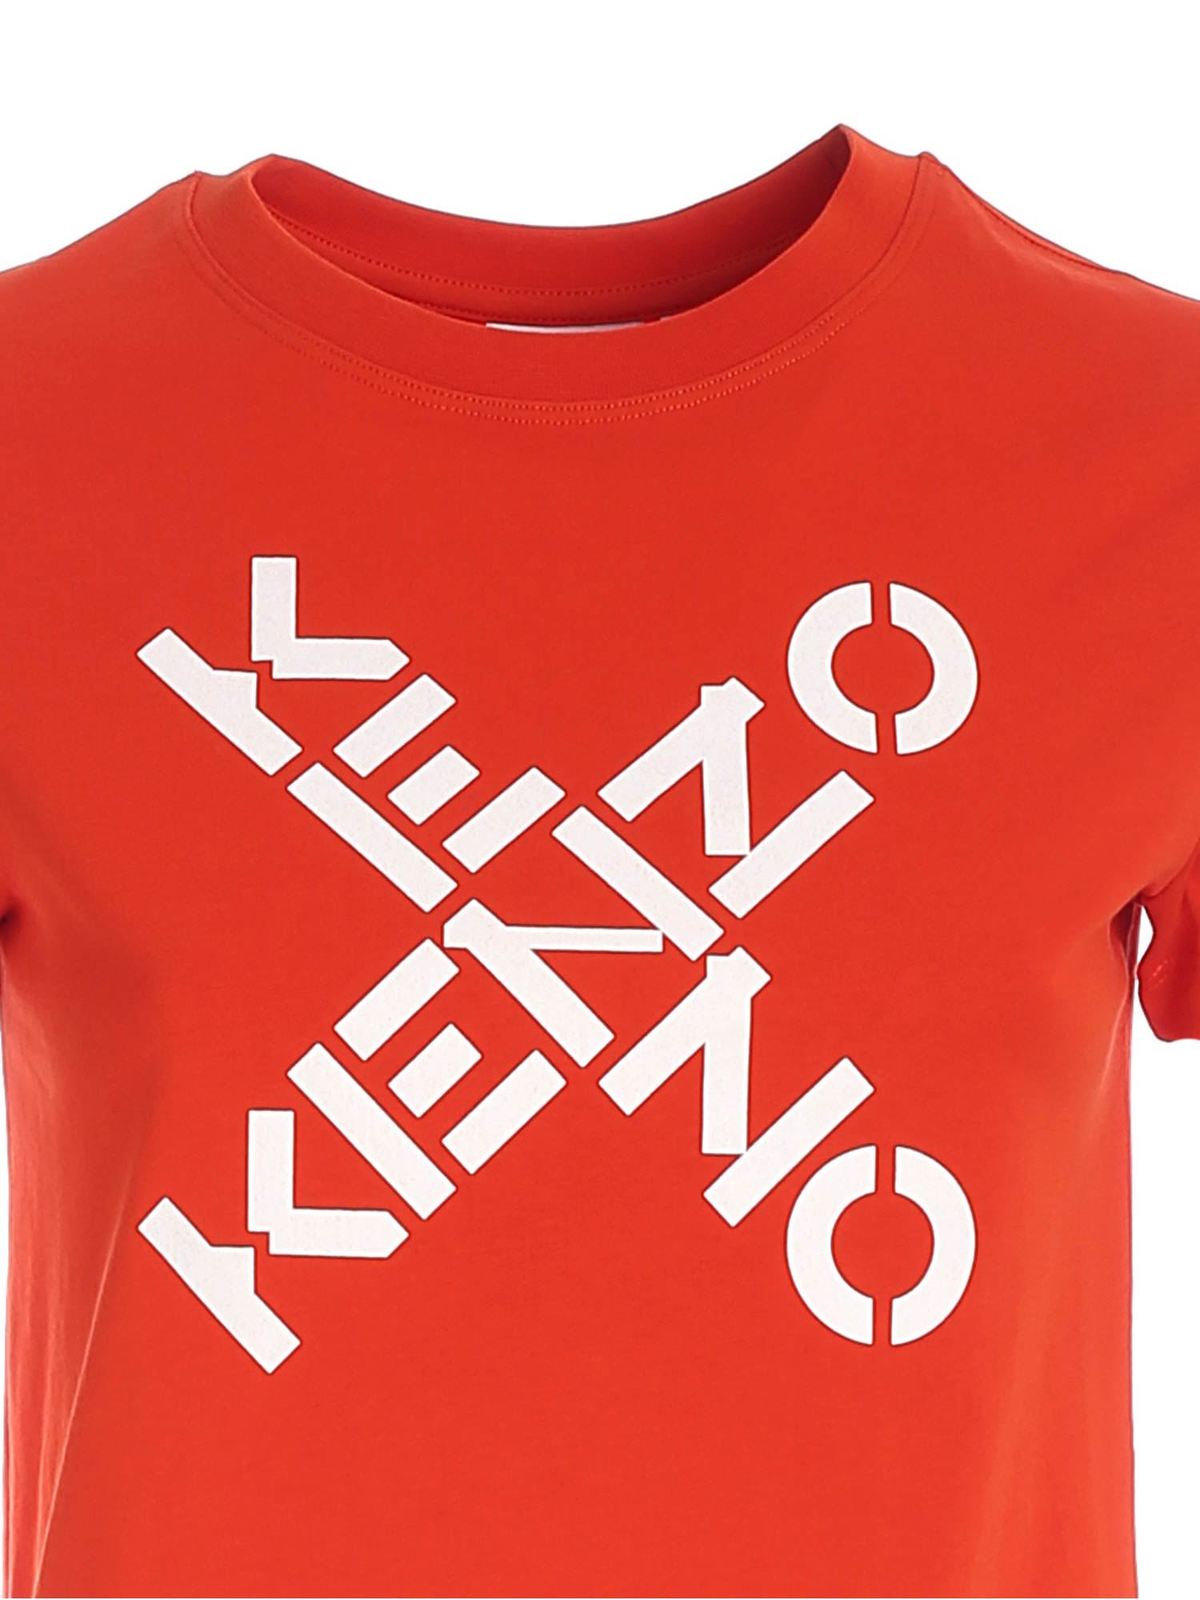 kenzo red tshirt